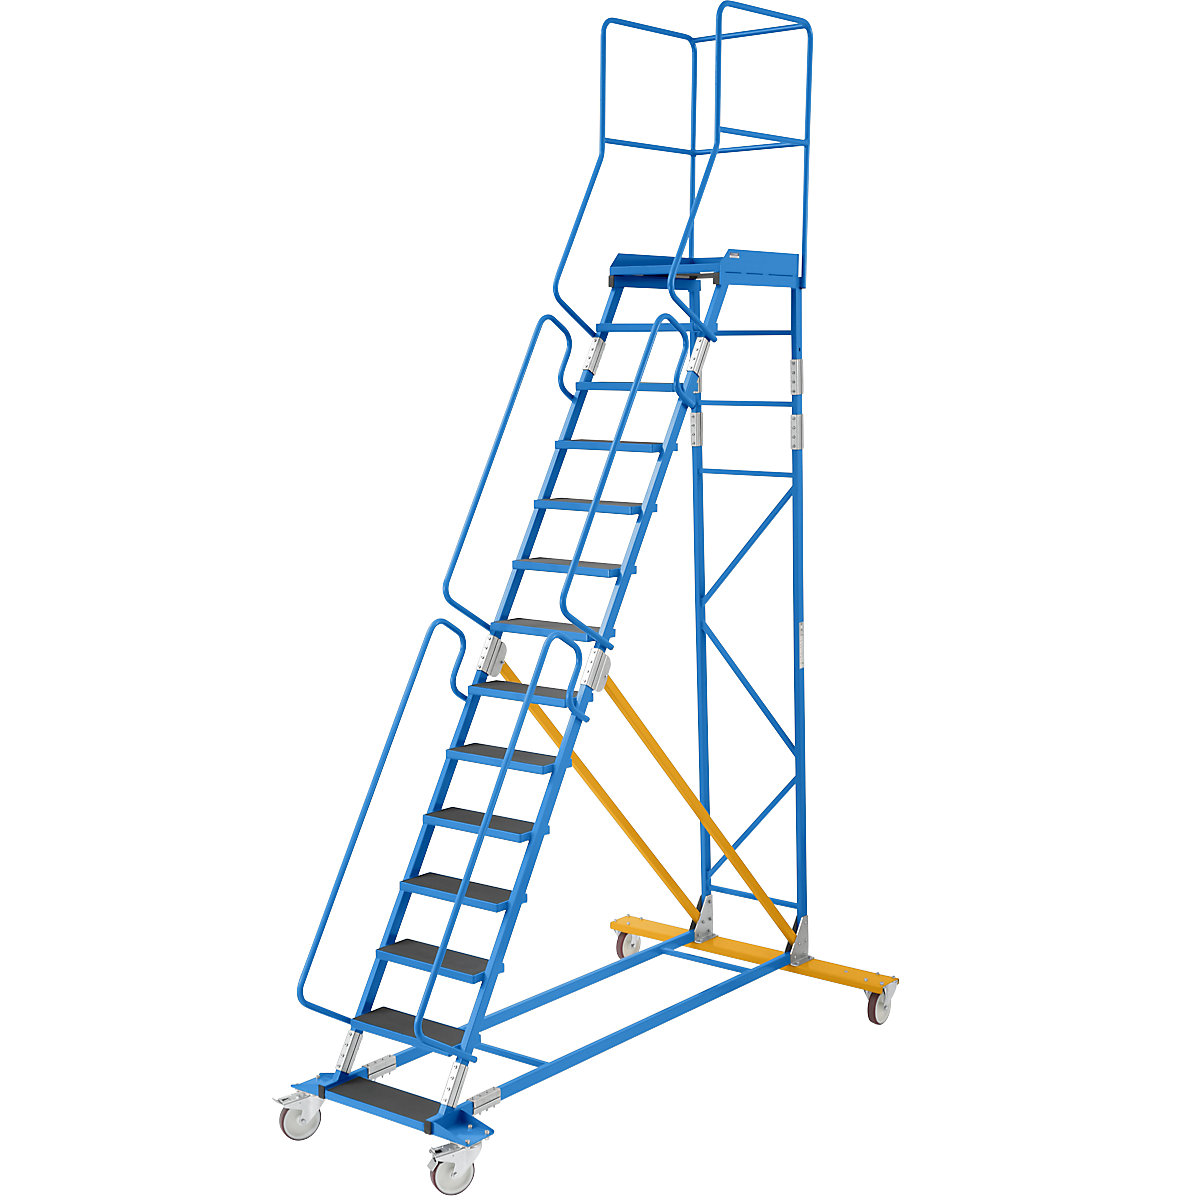 Escada de plataforma móvel – eurokraft pro, encaixe de degrau em borracha estriada, 14 degraus-23